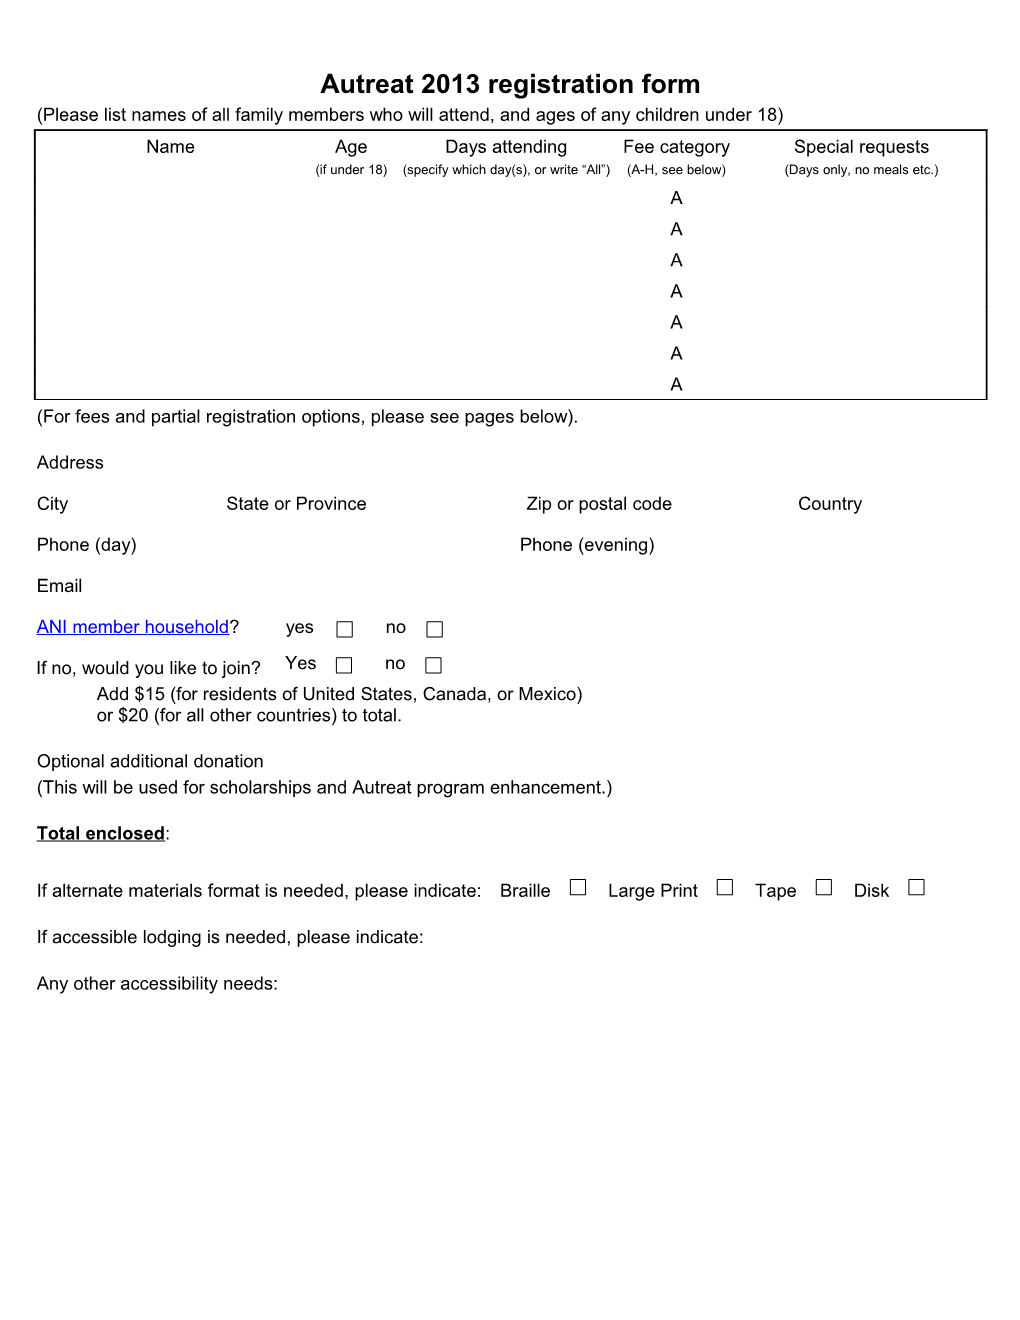 Autreat 2013Registration Form